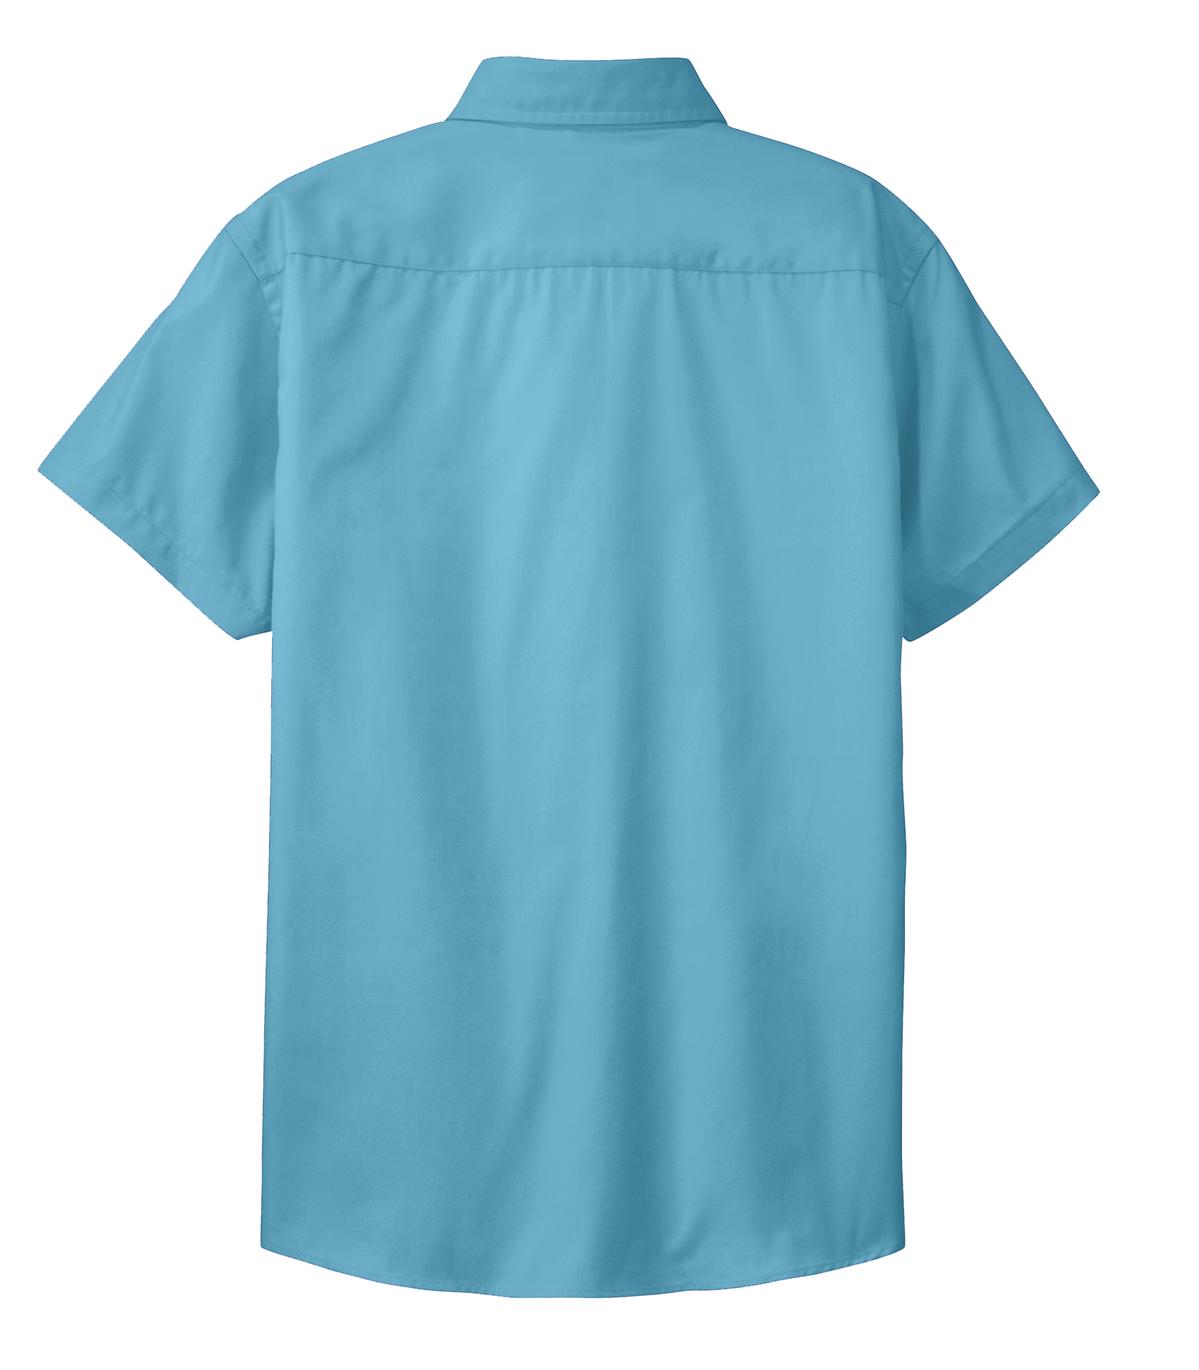 Mafoose Women's Comfortable Short Sleeve Easy Care Shirt Maui Blue-Back